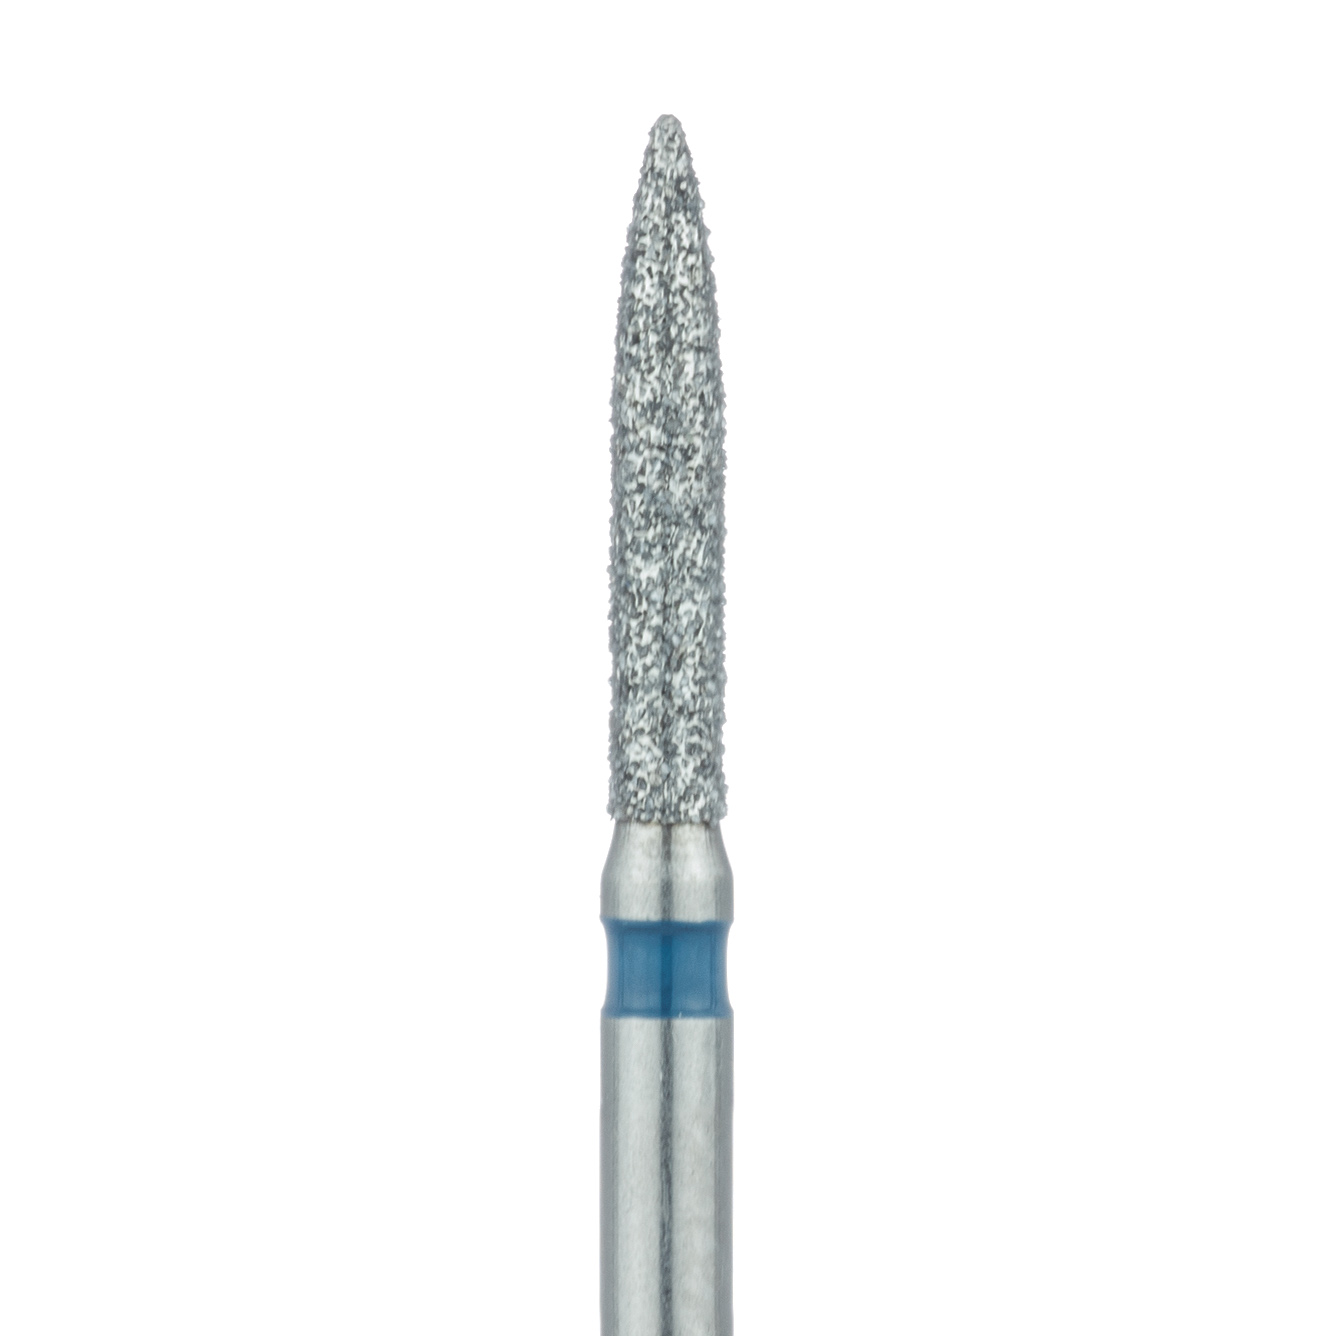 862-014-FG Flame Diamond Bur 1.4mm Medium FG